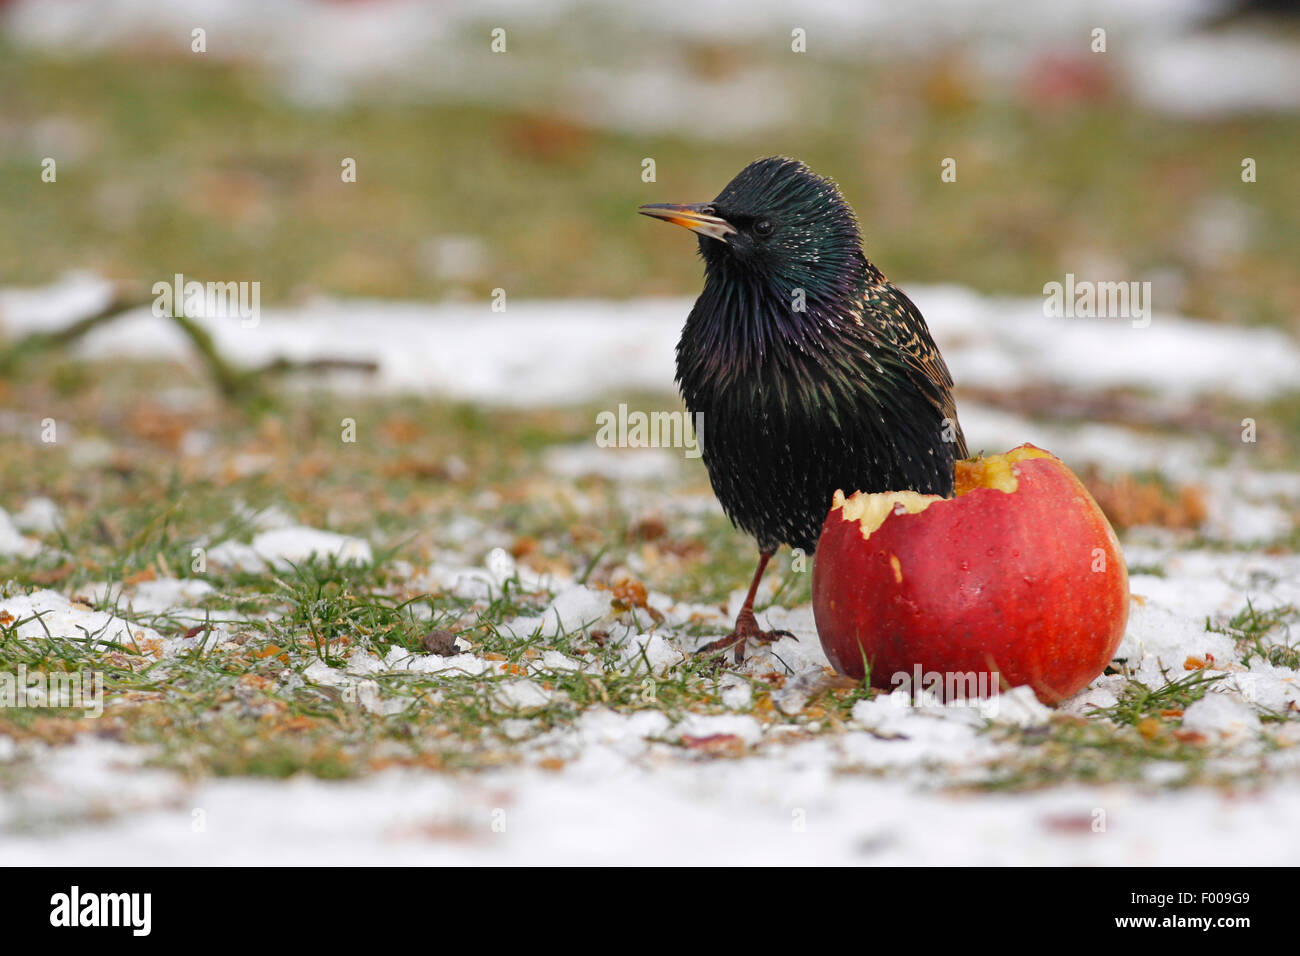 Estornino Pinto (Sturnus vulgaris), comiendo apple encuentra abajo durante el invierno, Alemania Foto de stock